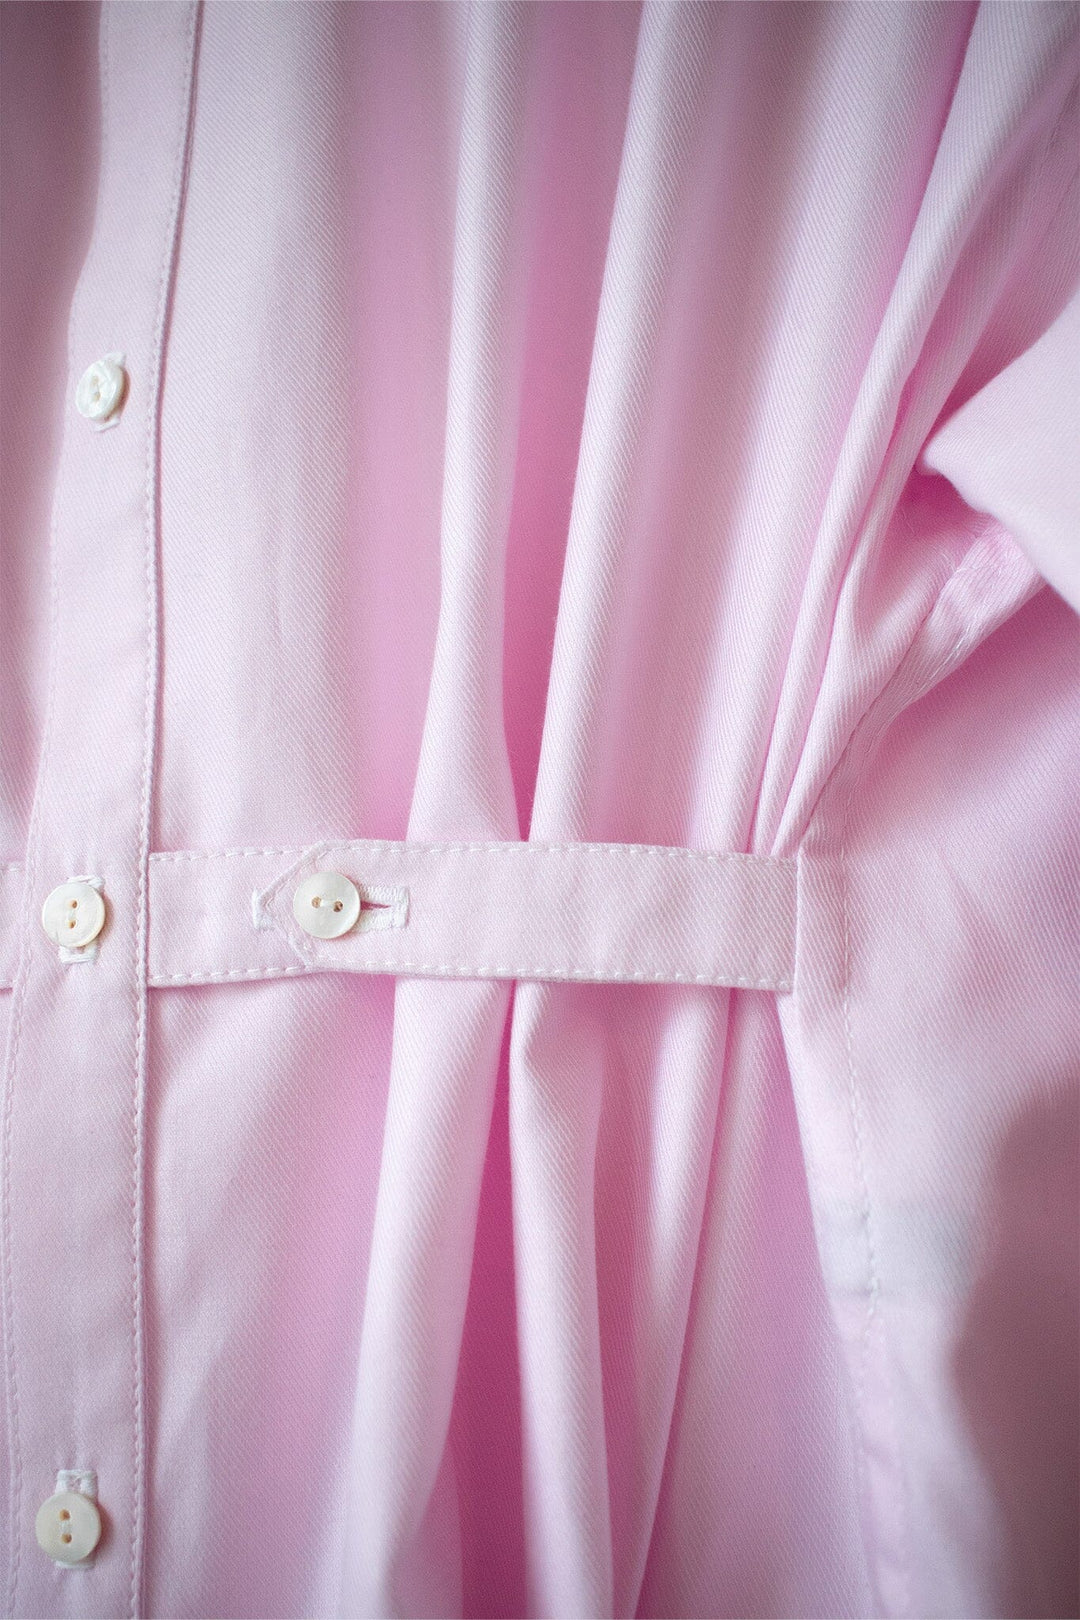 Ava Shirt in Pink Tops Harriet Eccleston 